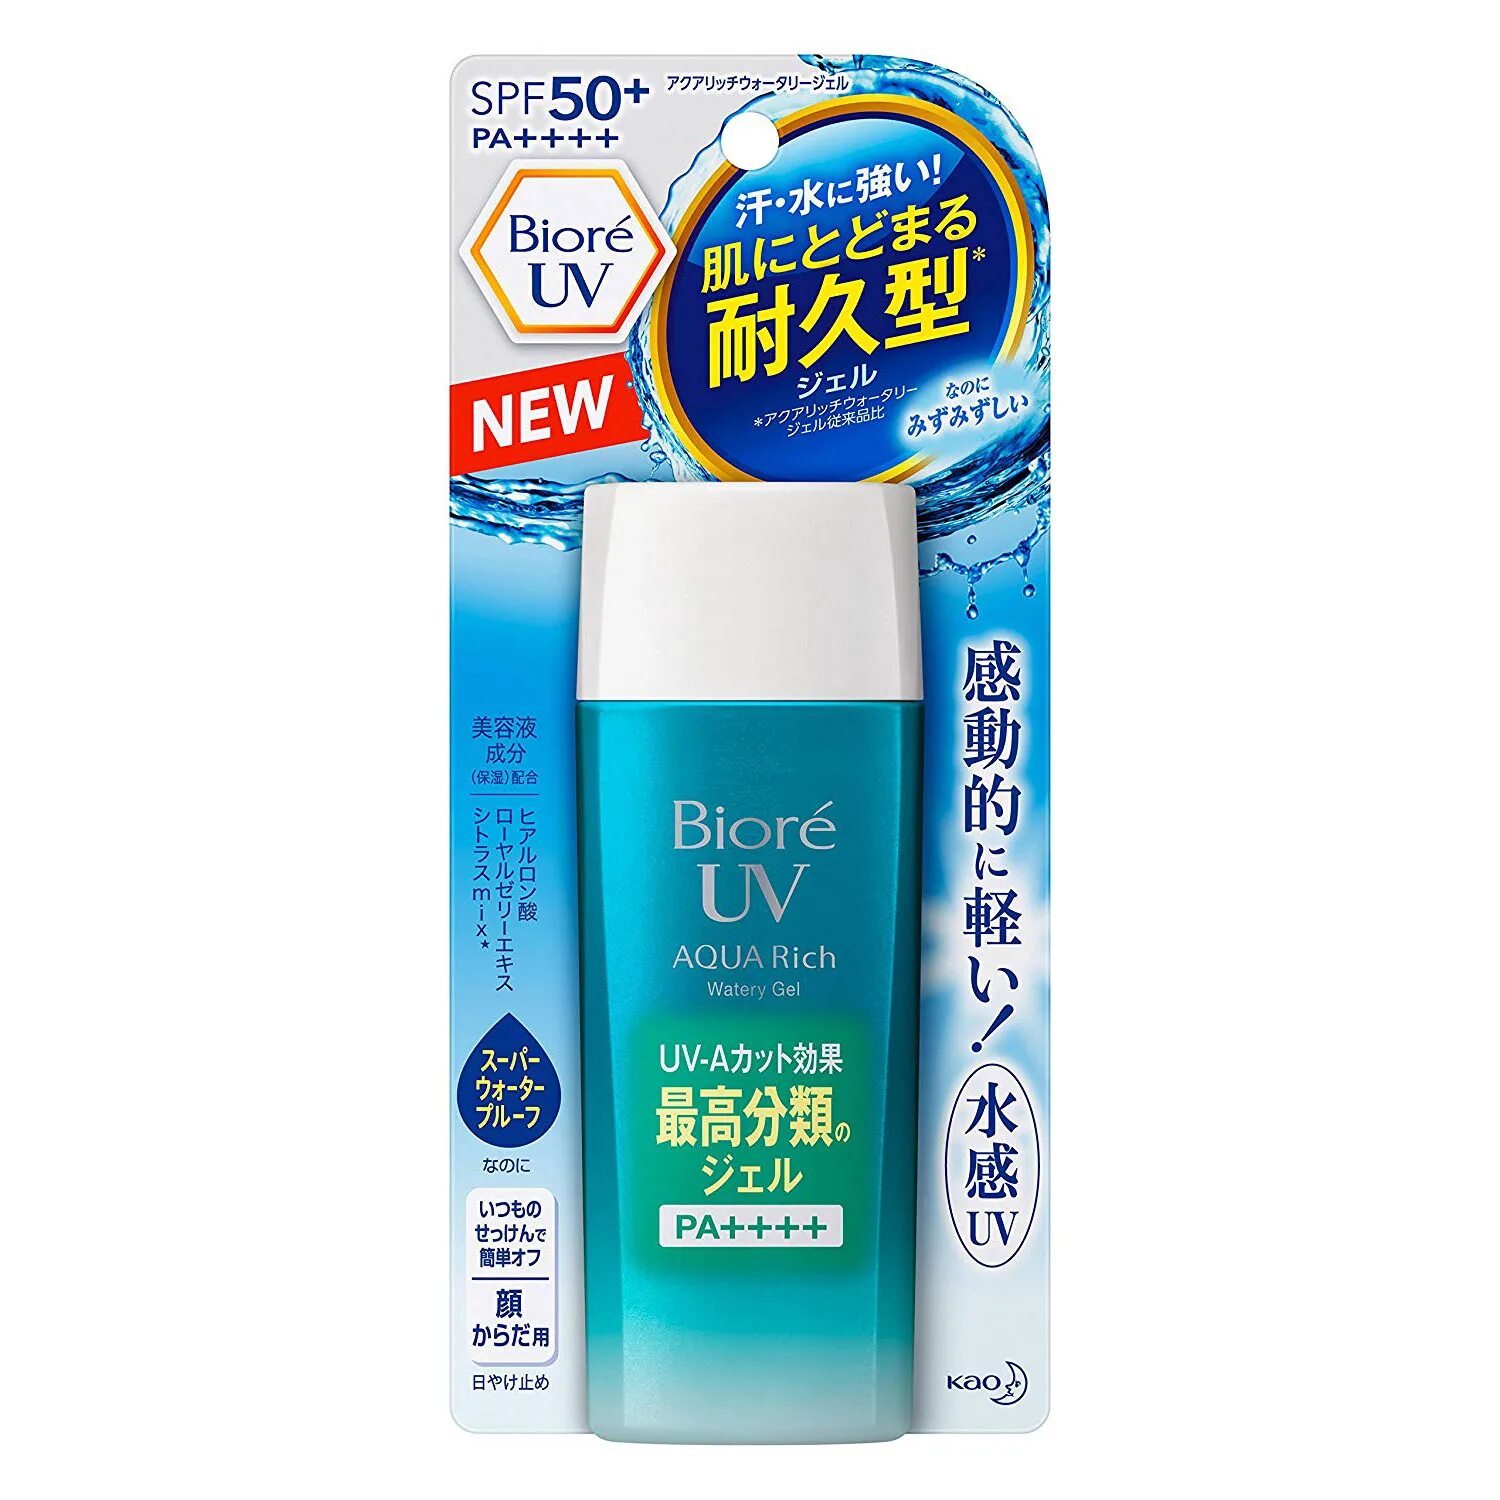 Biore UV SPF 50. Крем СПФ 50 Biore. Солнцезащитный крем Biore UV 50. Biore UV Aqua Rich watery. Biore uv aqua rich spf